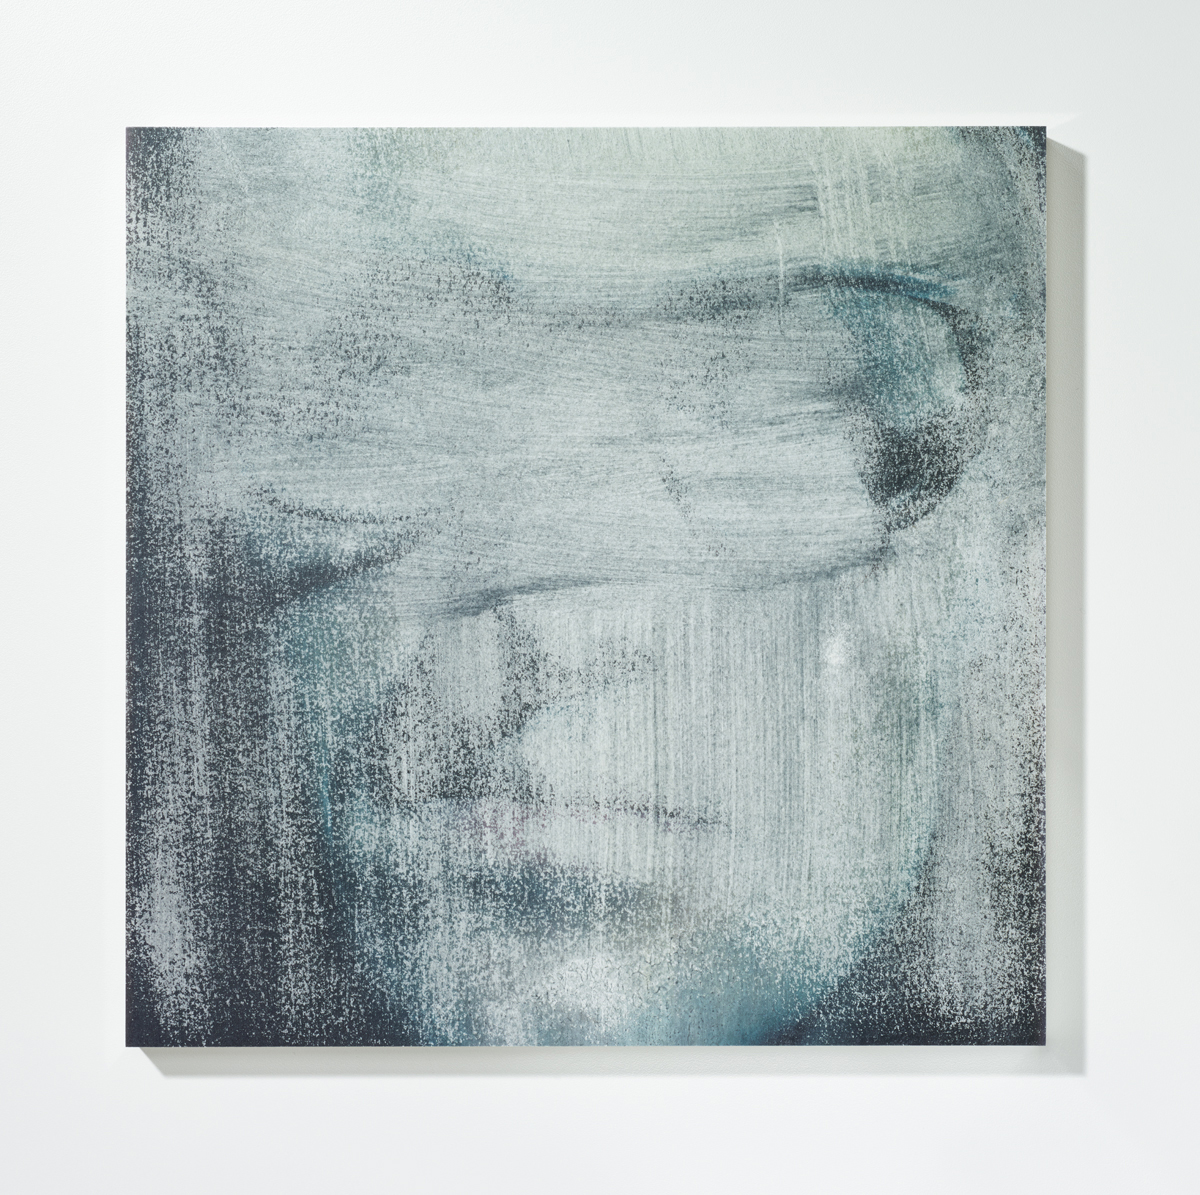 Löschung 3, 201630 x 30 cmPigmentprint, gelöscht, gefirnisst, kaschiert auf Acrylglas